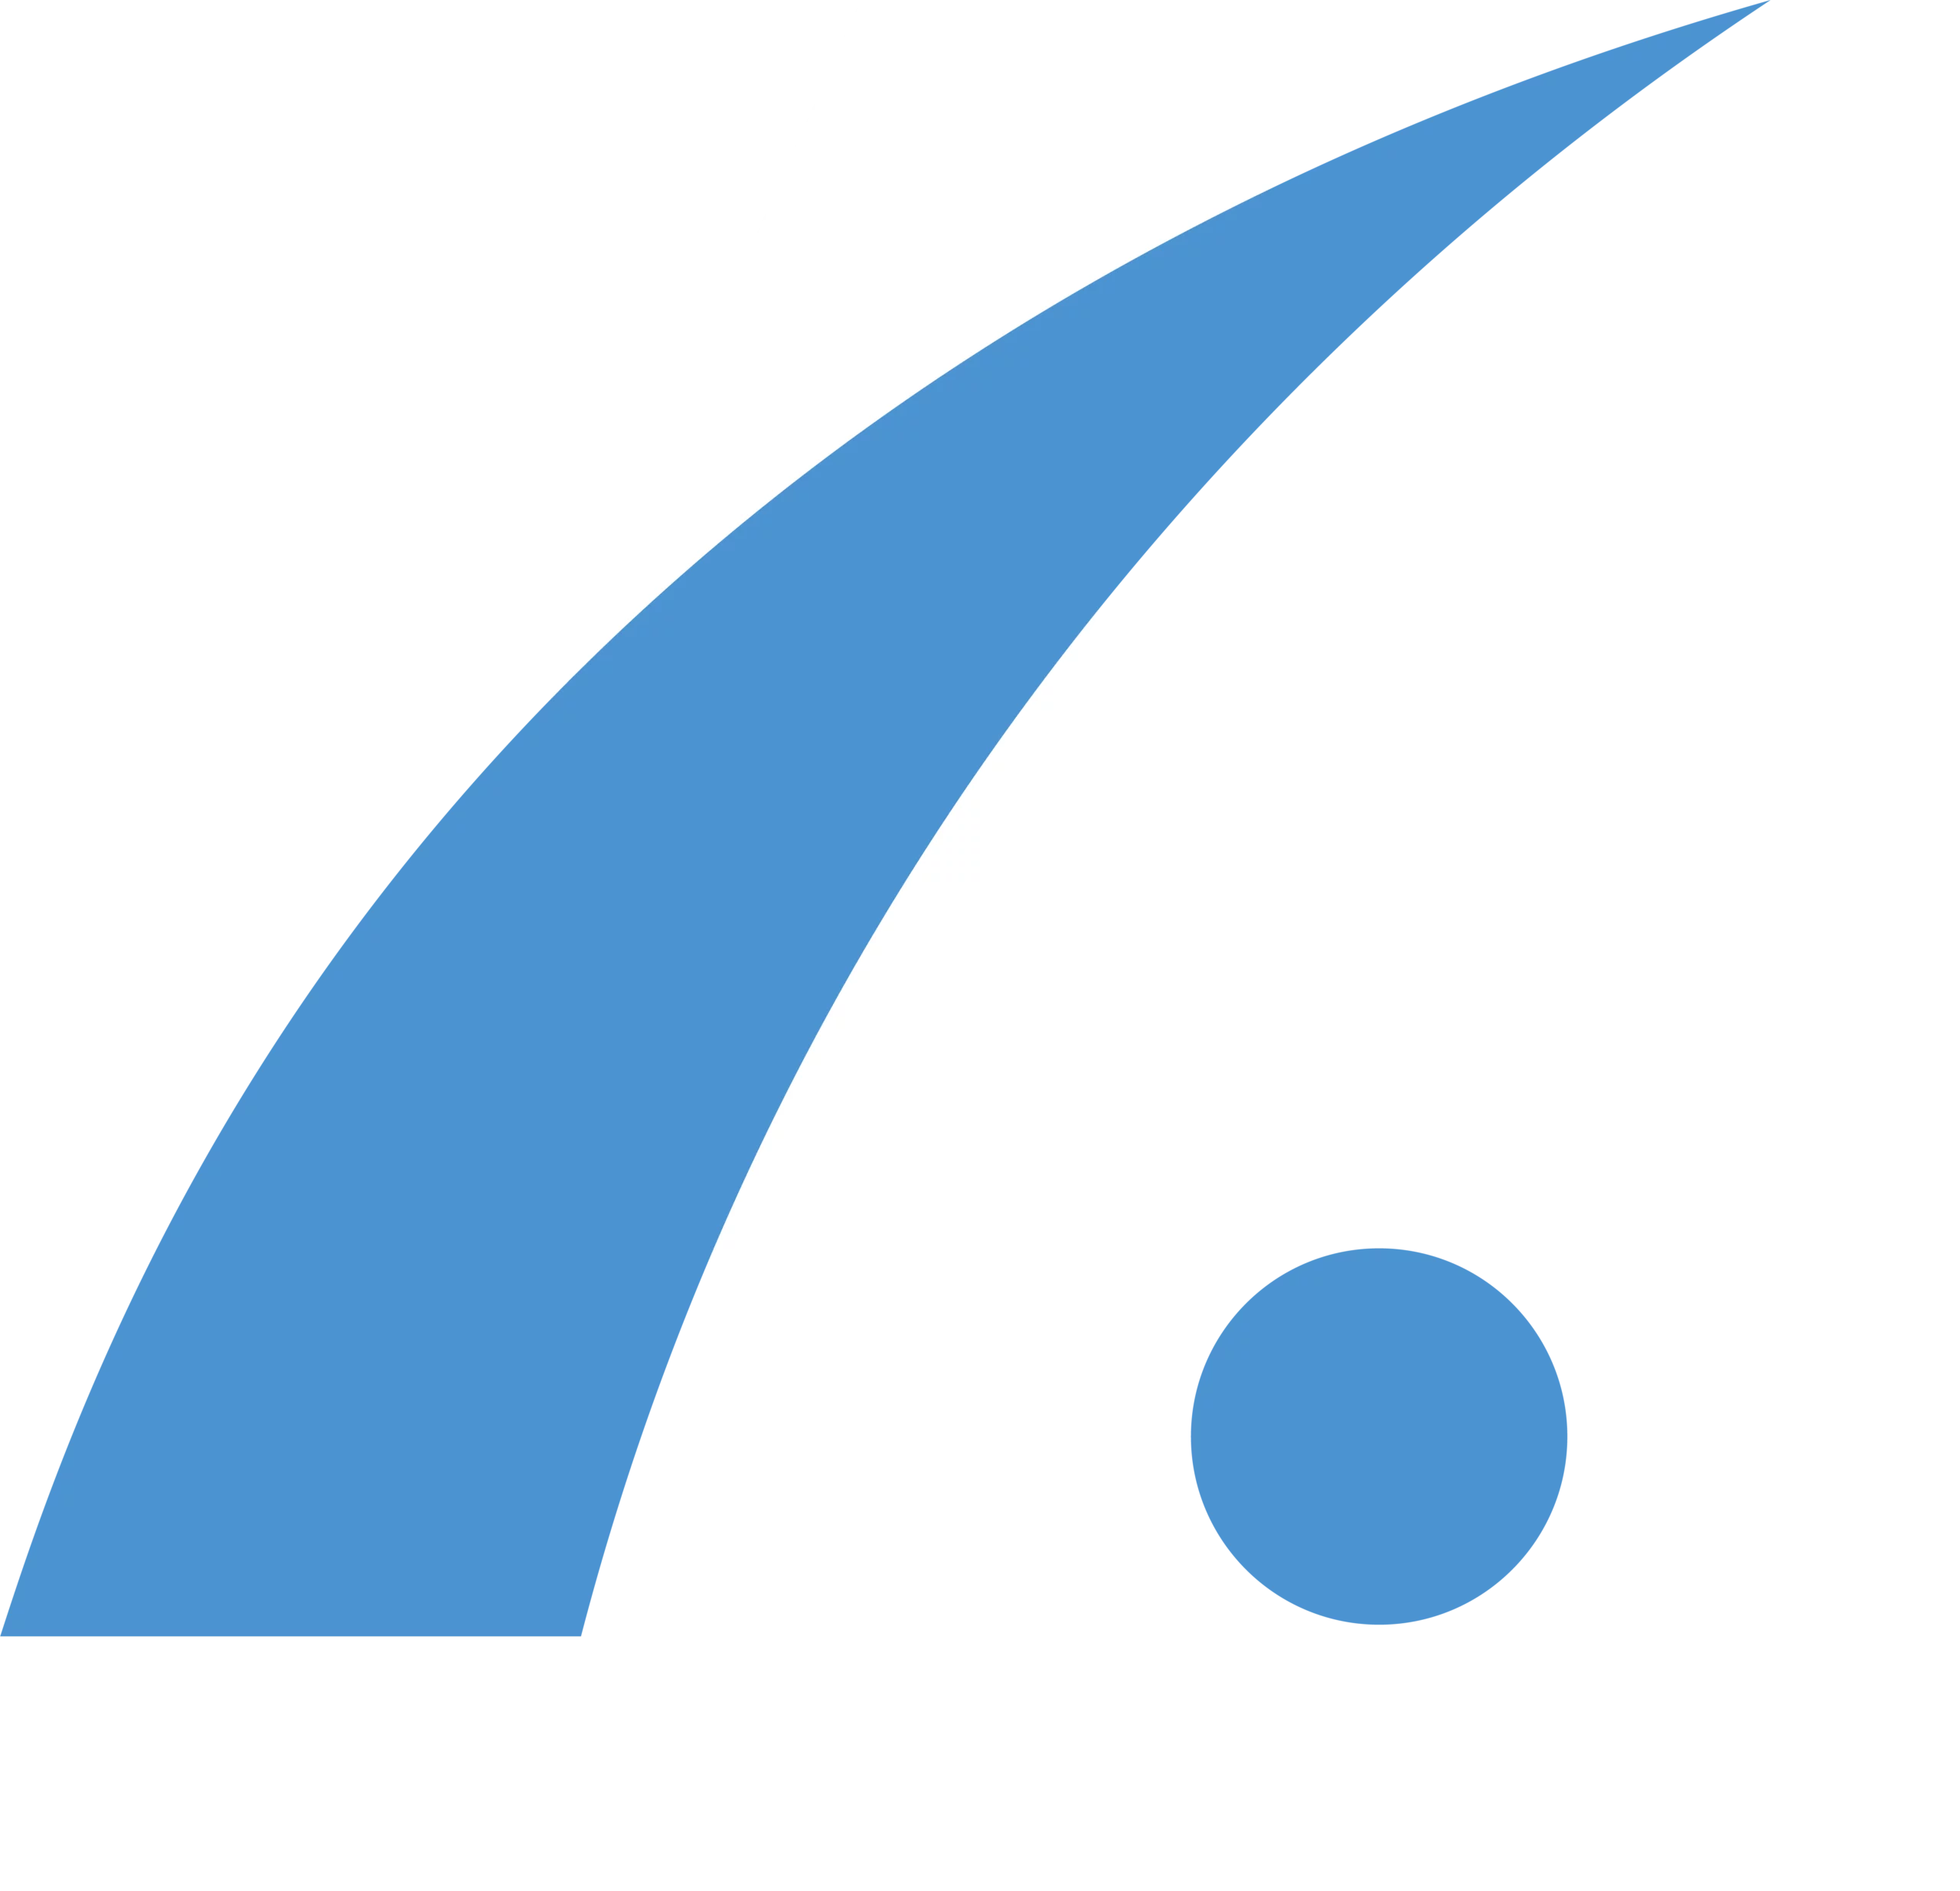 Kinschots Consultancy